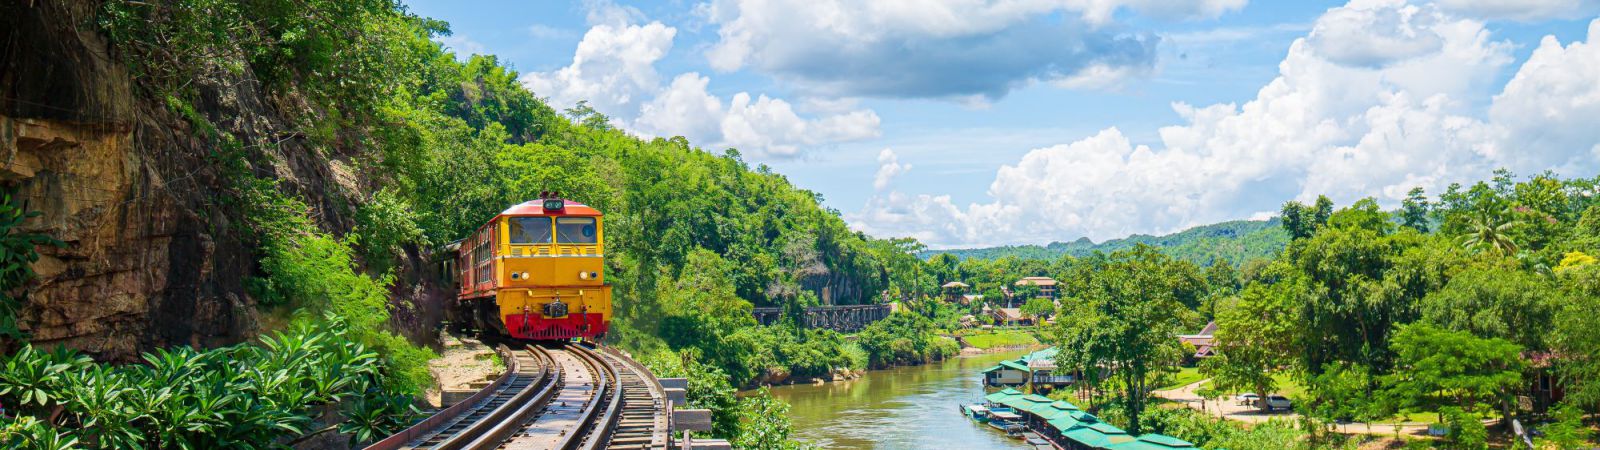 Trein langs de river Kwai in Thailand